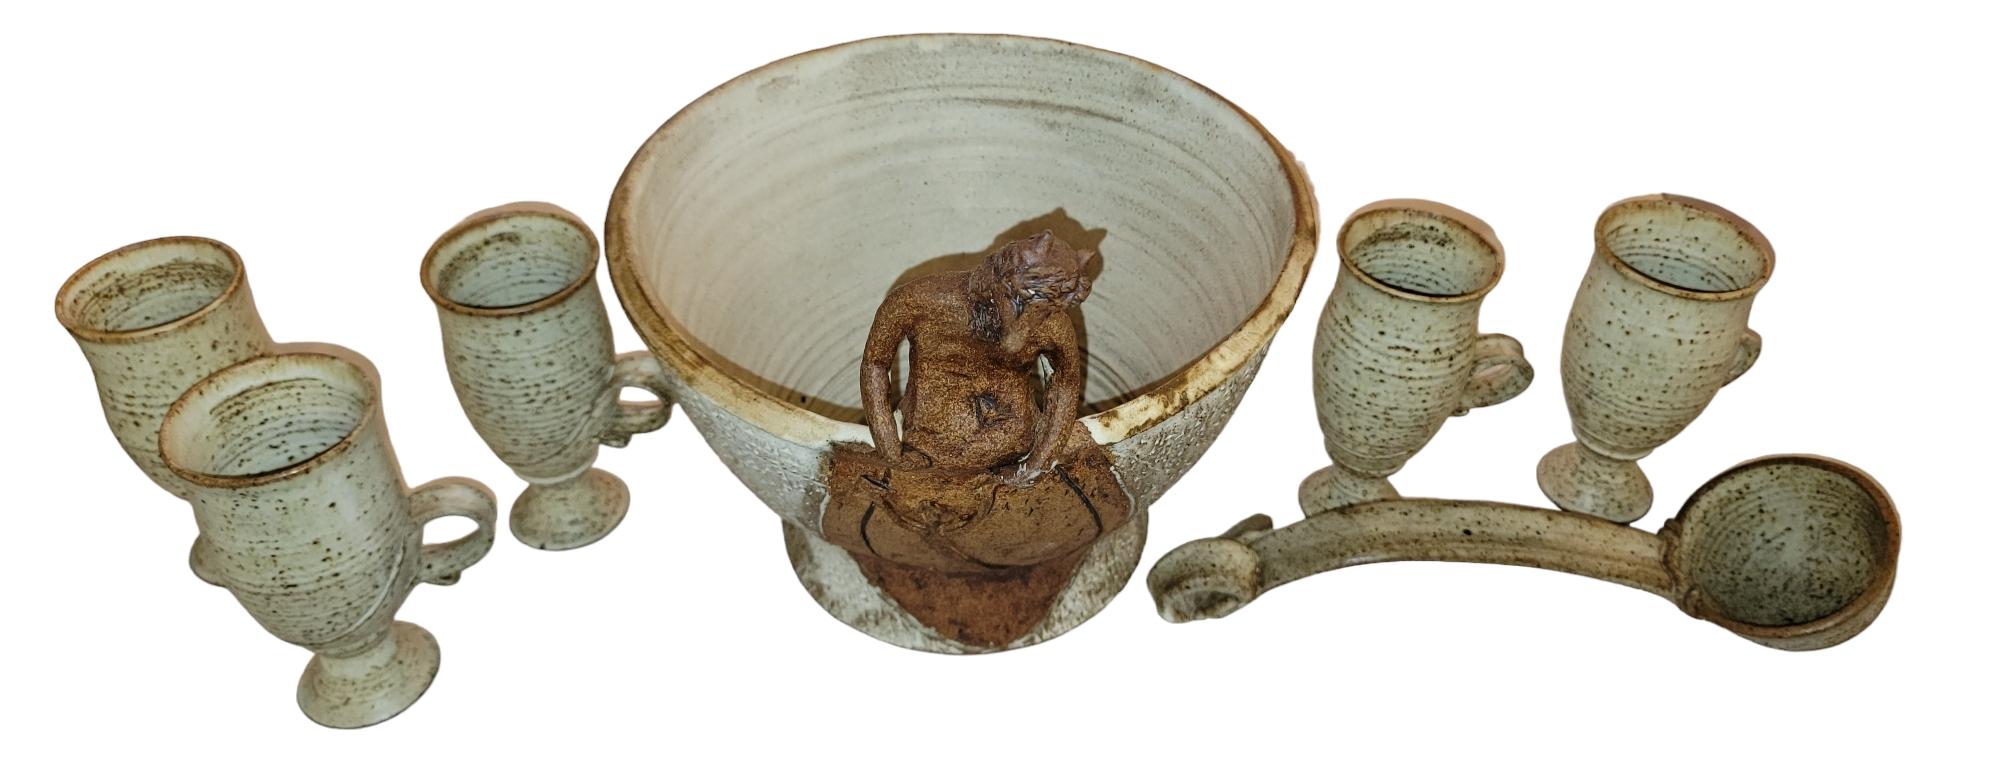 Mid Century Punschschüssel mit Schöpflöffel und fünf Tassen.  Die Punch Bowl zeigt eine gebeugte Figur, die wie eine dämonische Gestalt aussieht. Wunderbare Textur der vorderen Figur. An der Vorderseite der Schale befindet sich unterhalb der